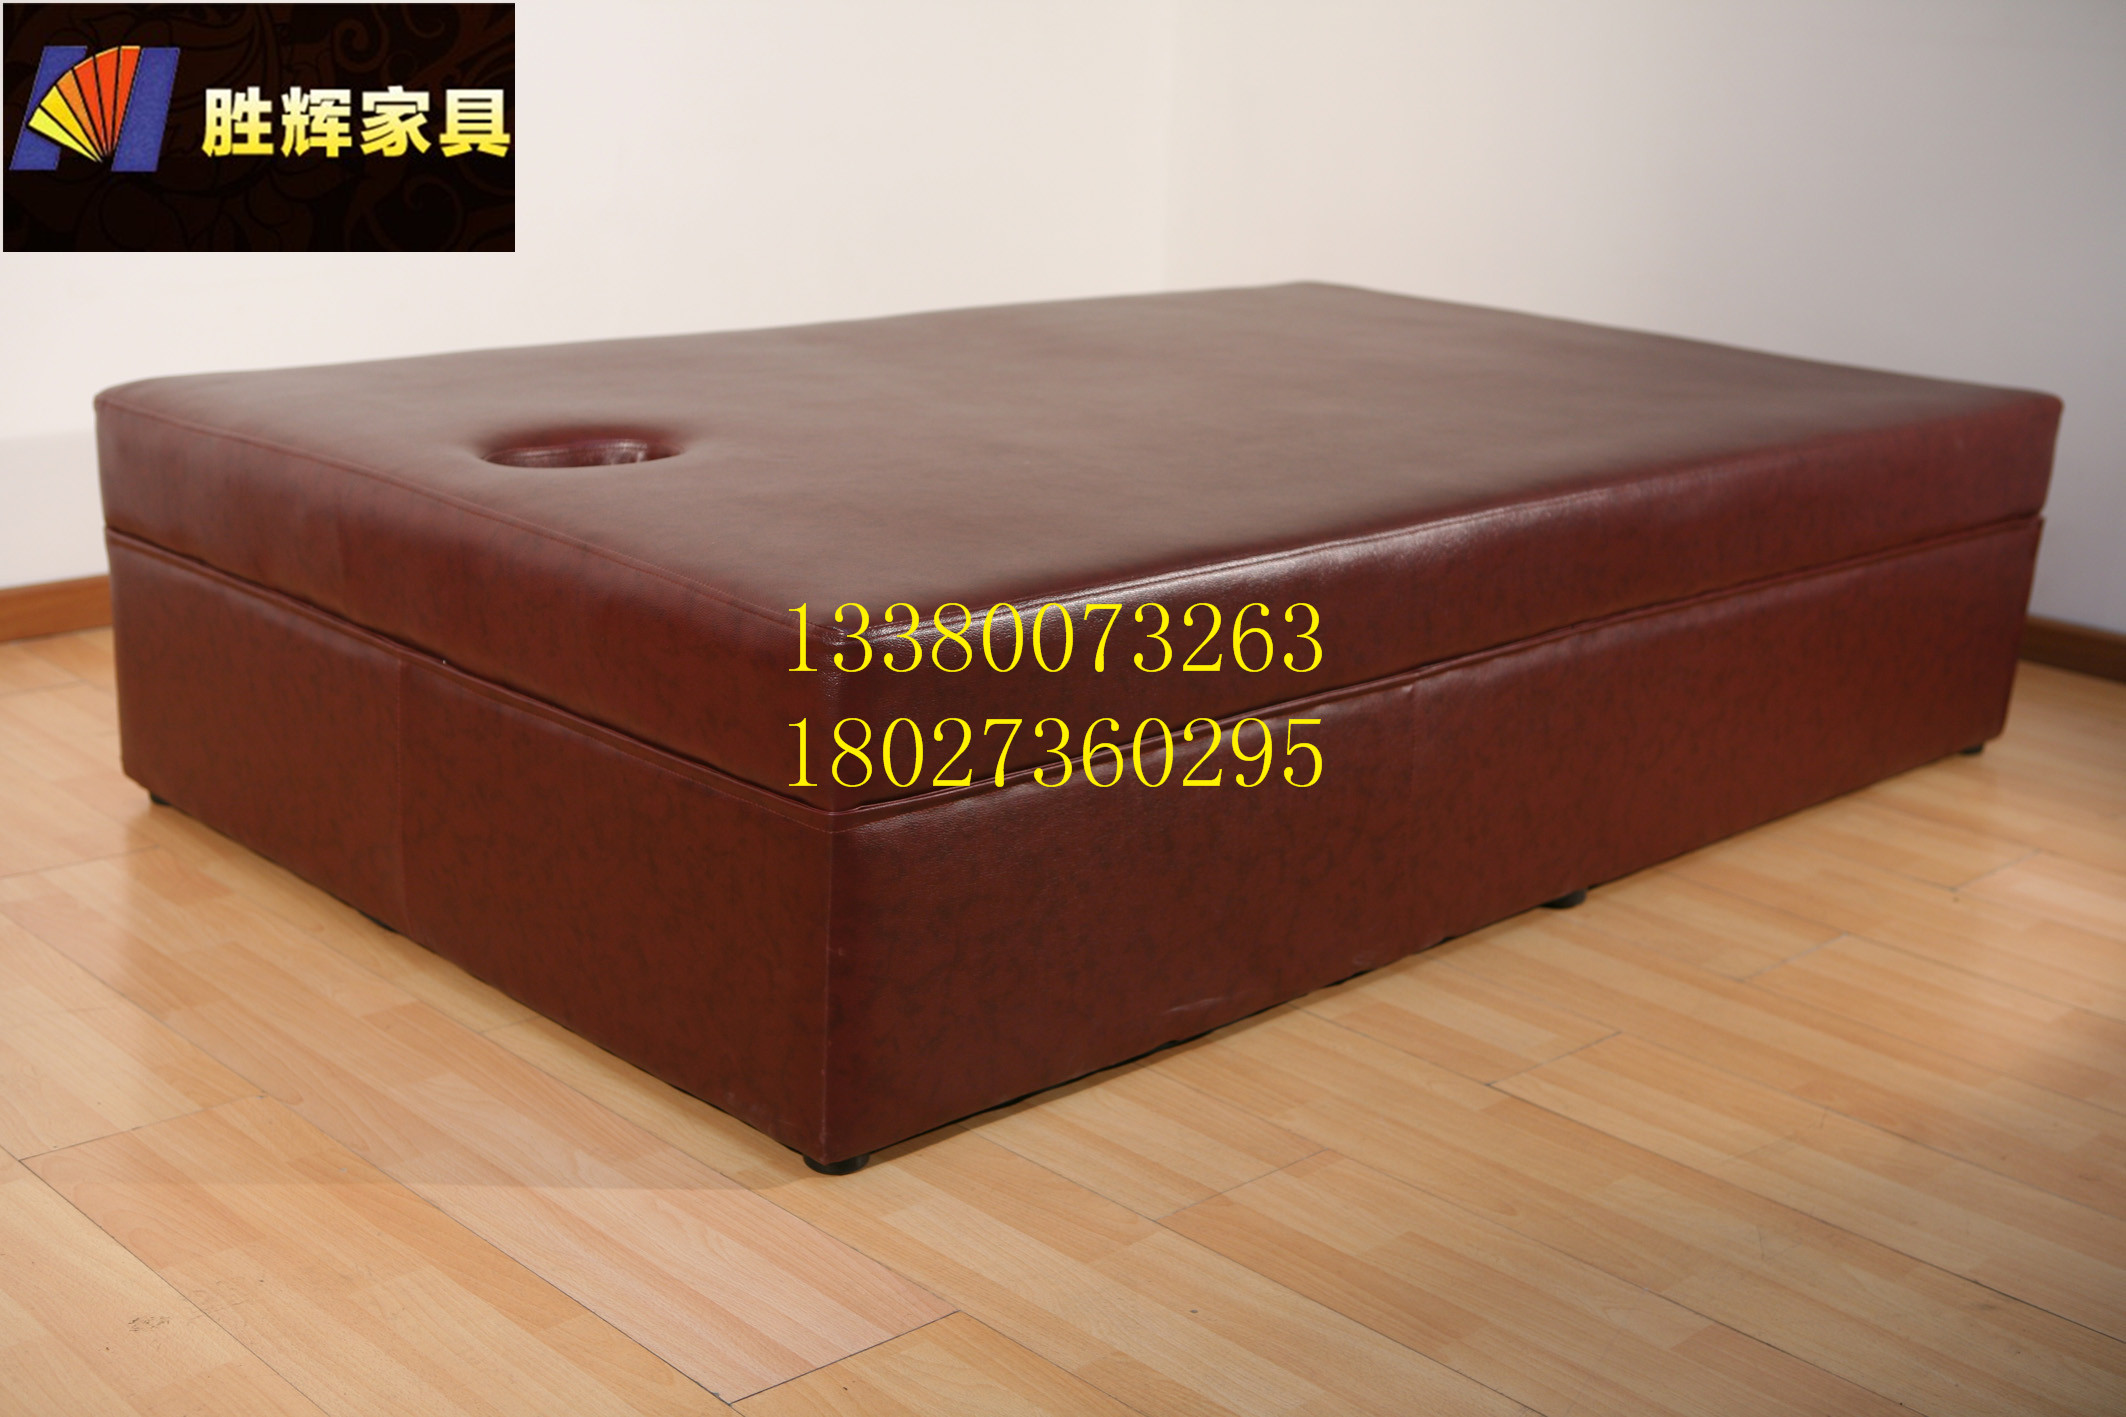 广州市按摩床足疗沙发床厂家供应按摩床足疗沙发床批发